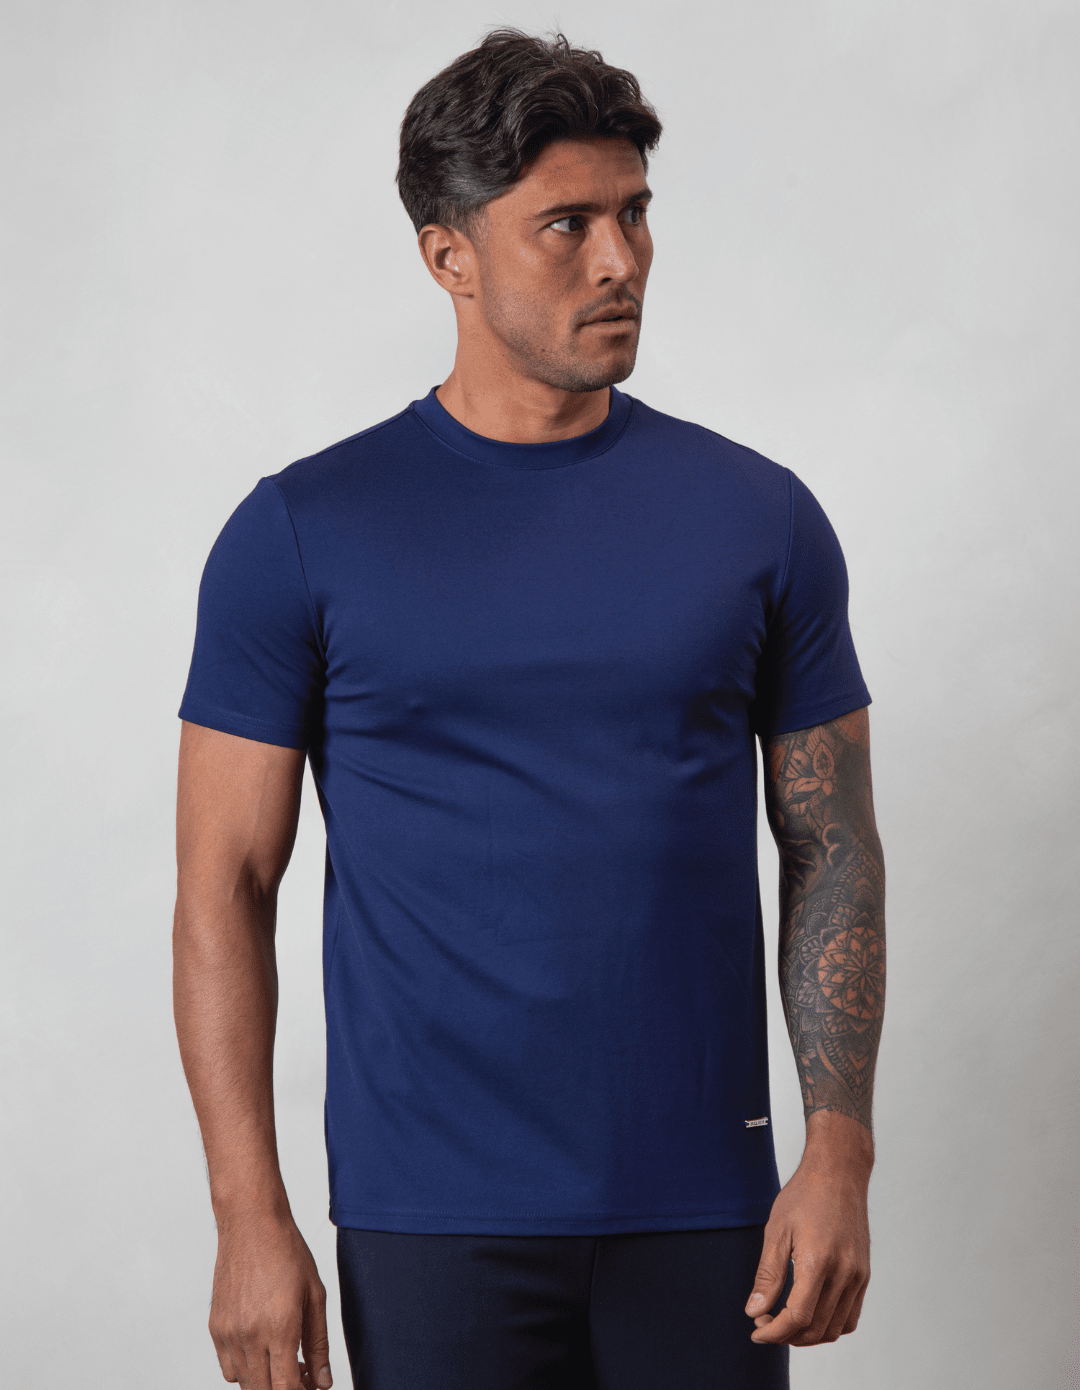 Premium Plain T-shirt Navy